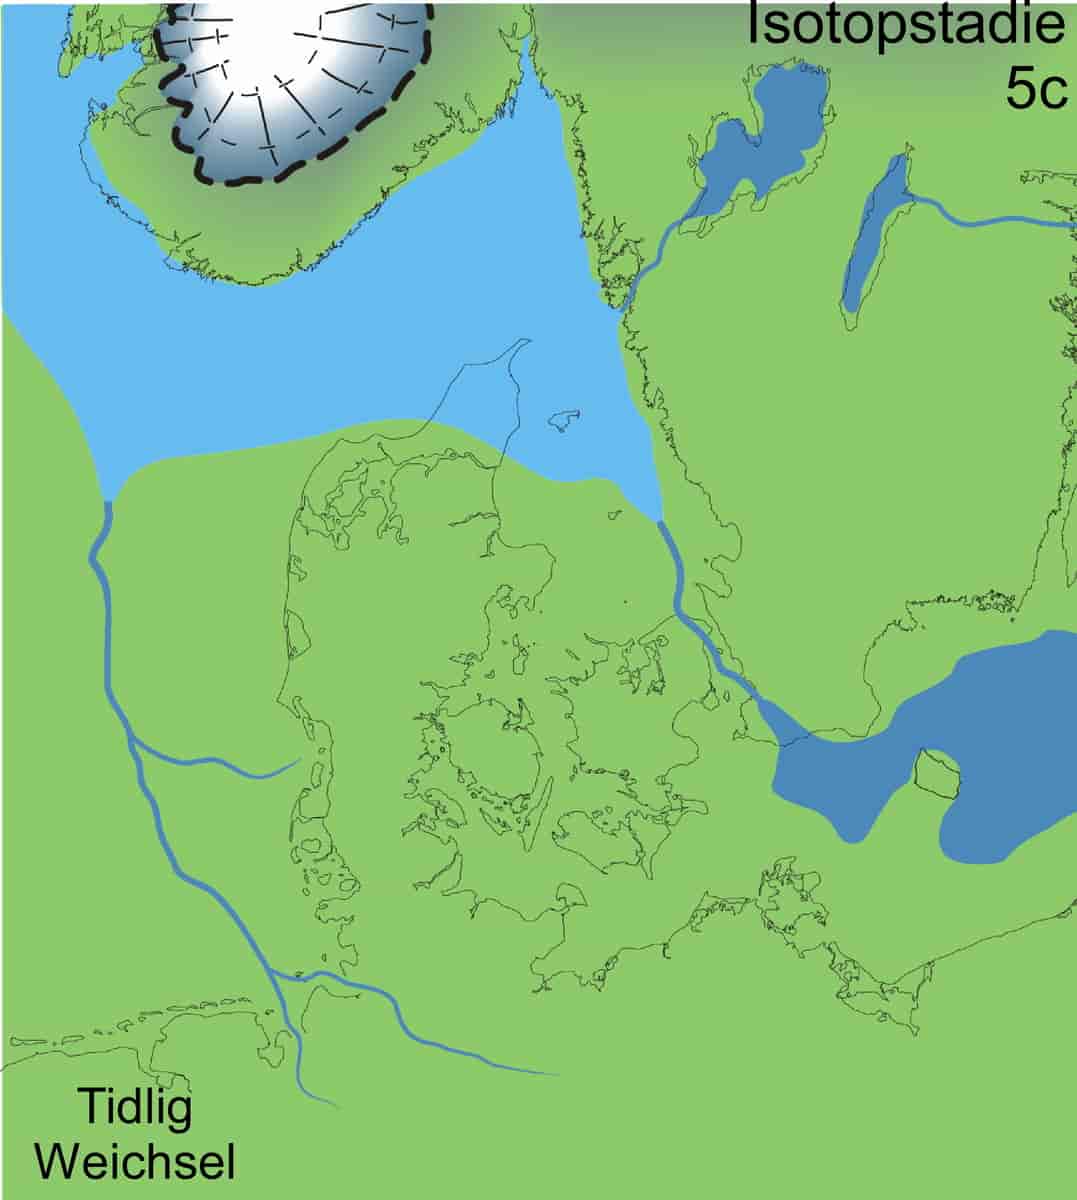 Lavt havniveau og lille isskjold fra Tidlig Weichsel